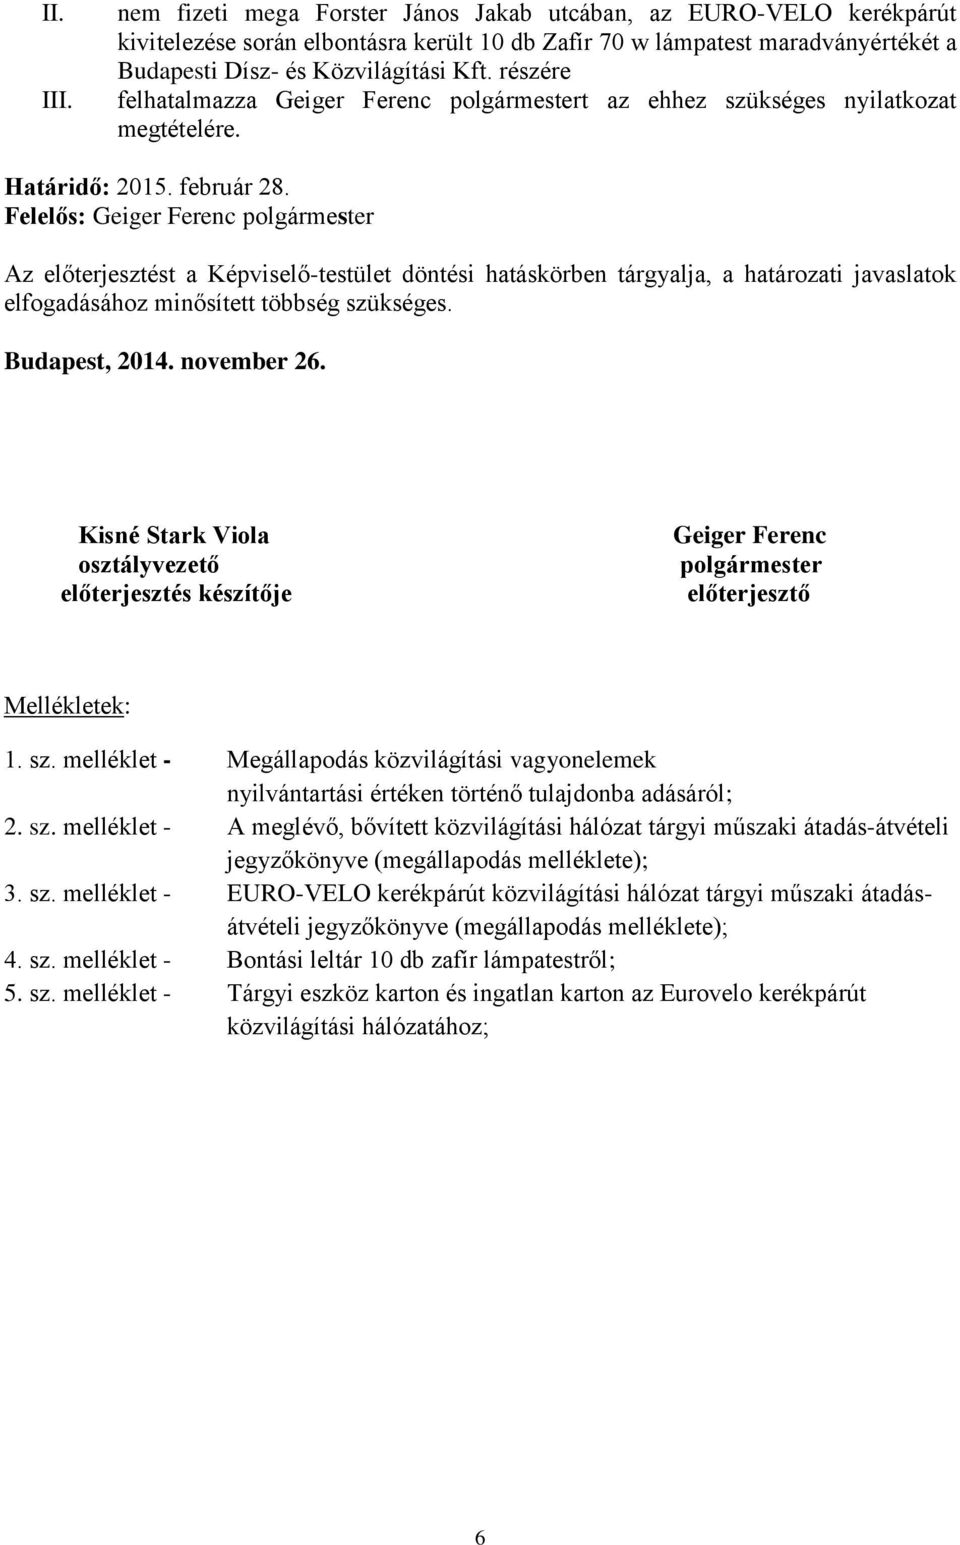 Az előterjesztést a Képviselő-testület döntési hatáskörben tárgyalja, a határozati javaslatok elfogadásához minősített többség szükséges. Budapest, 2014. november 26.